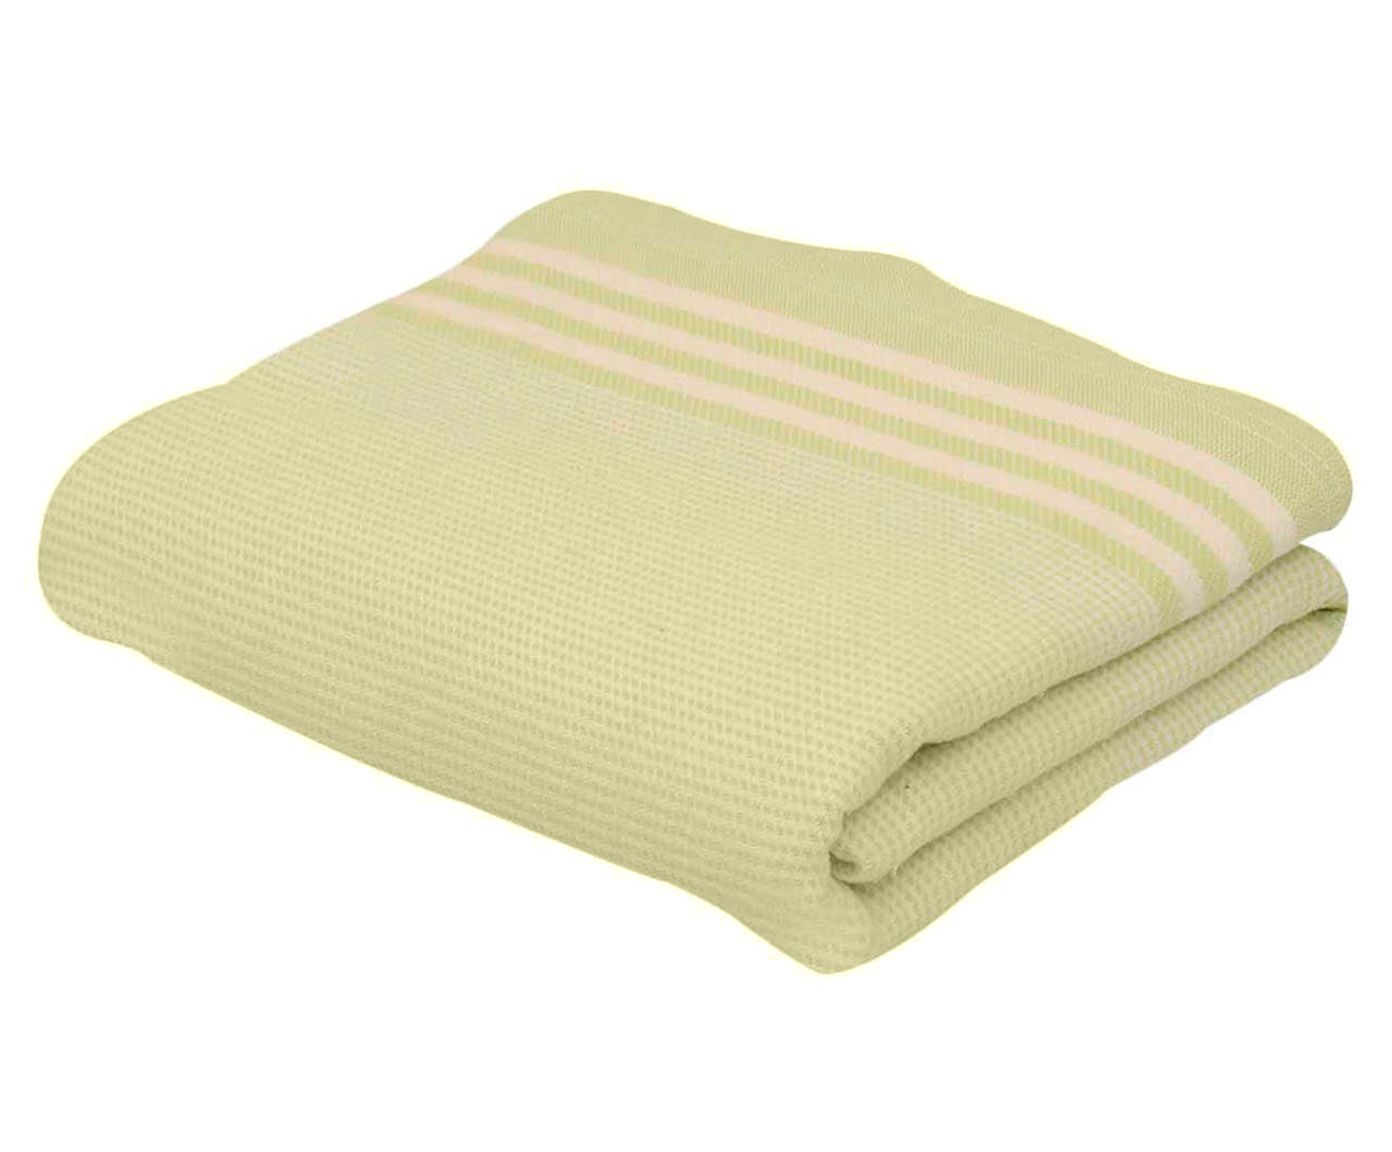 Cobertor talisman alecrim - para cama de solteiro | Westwing.com.br